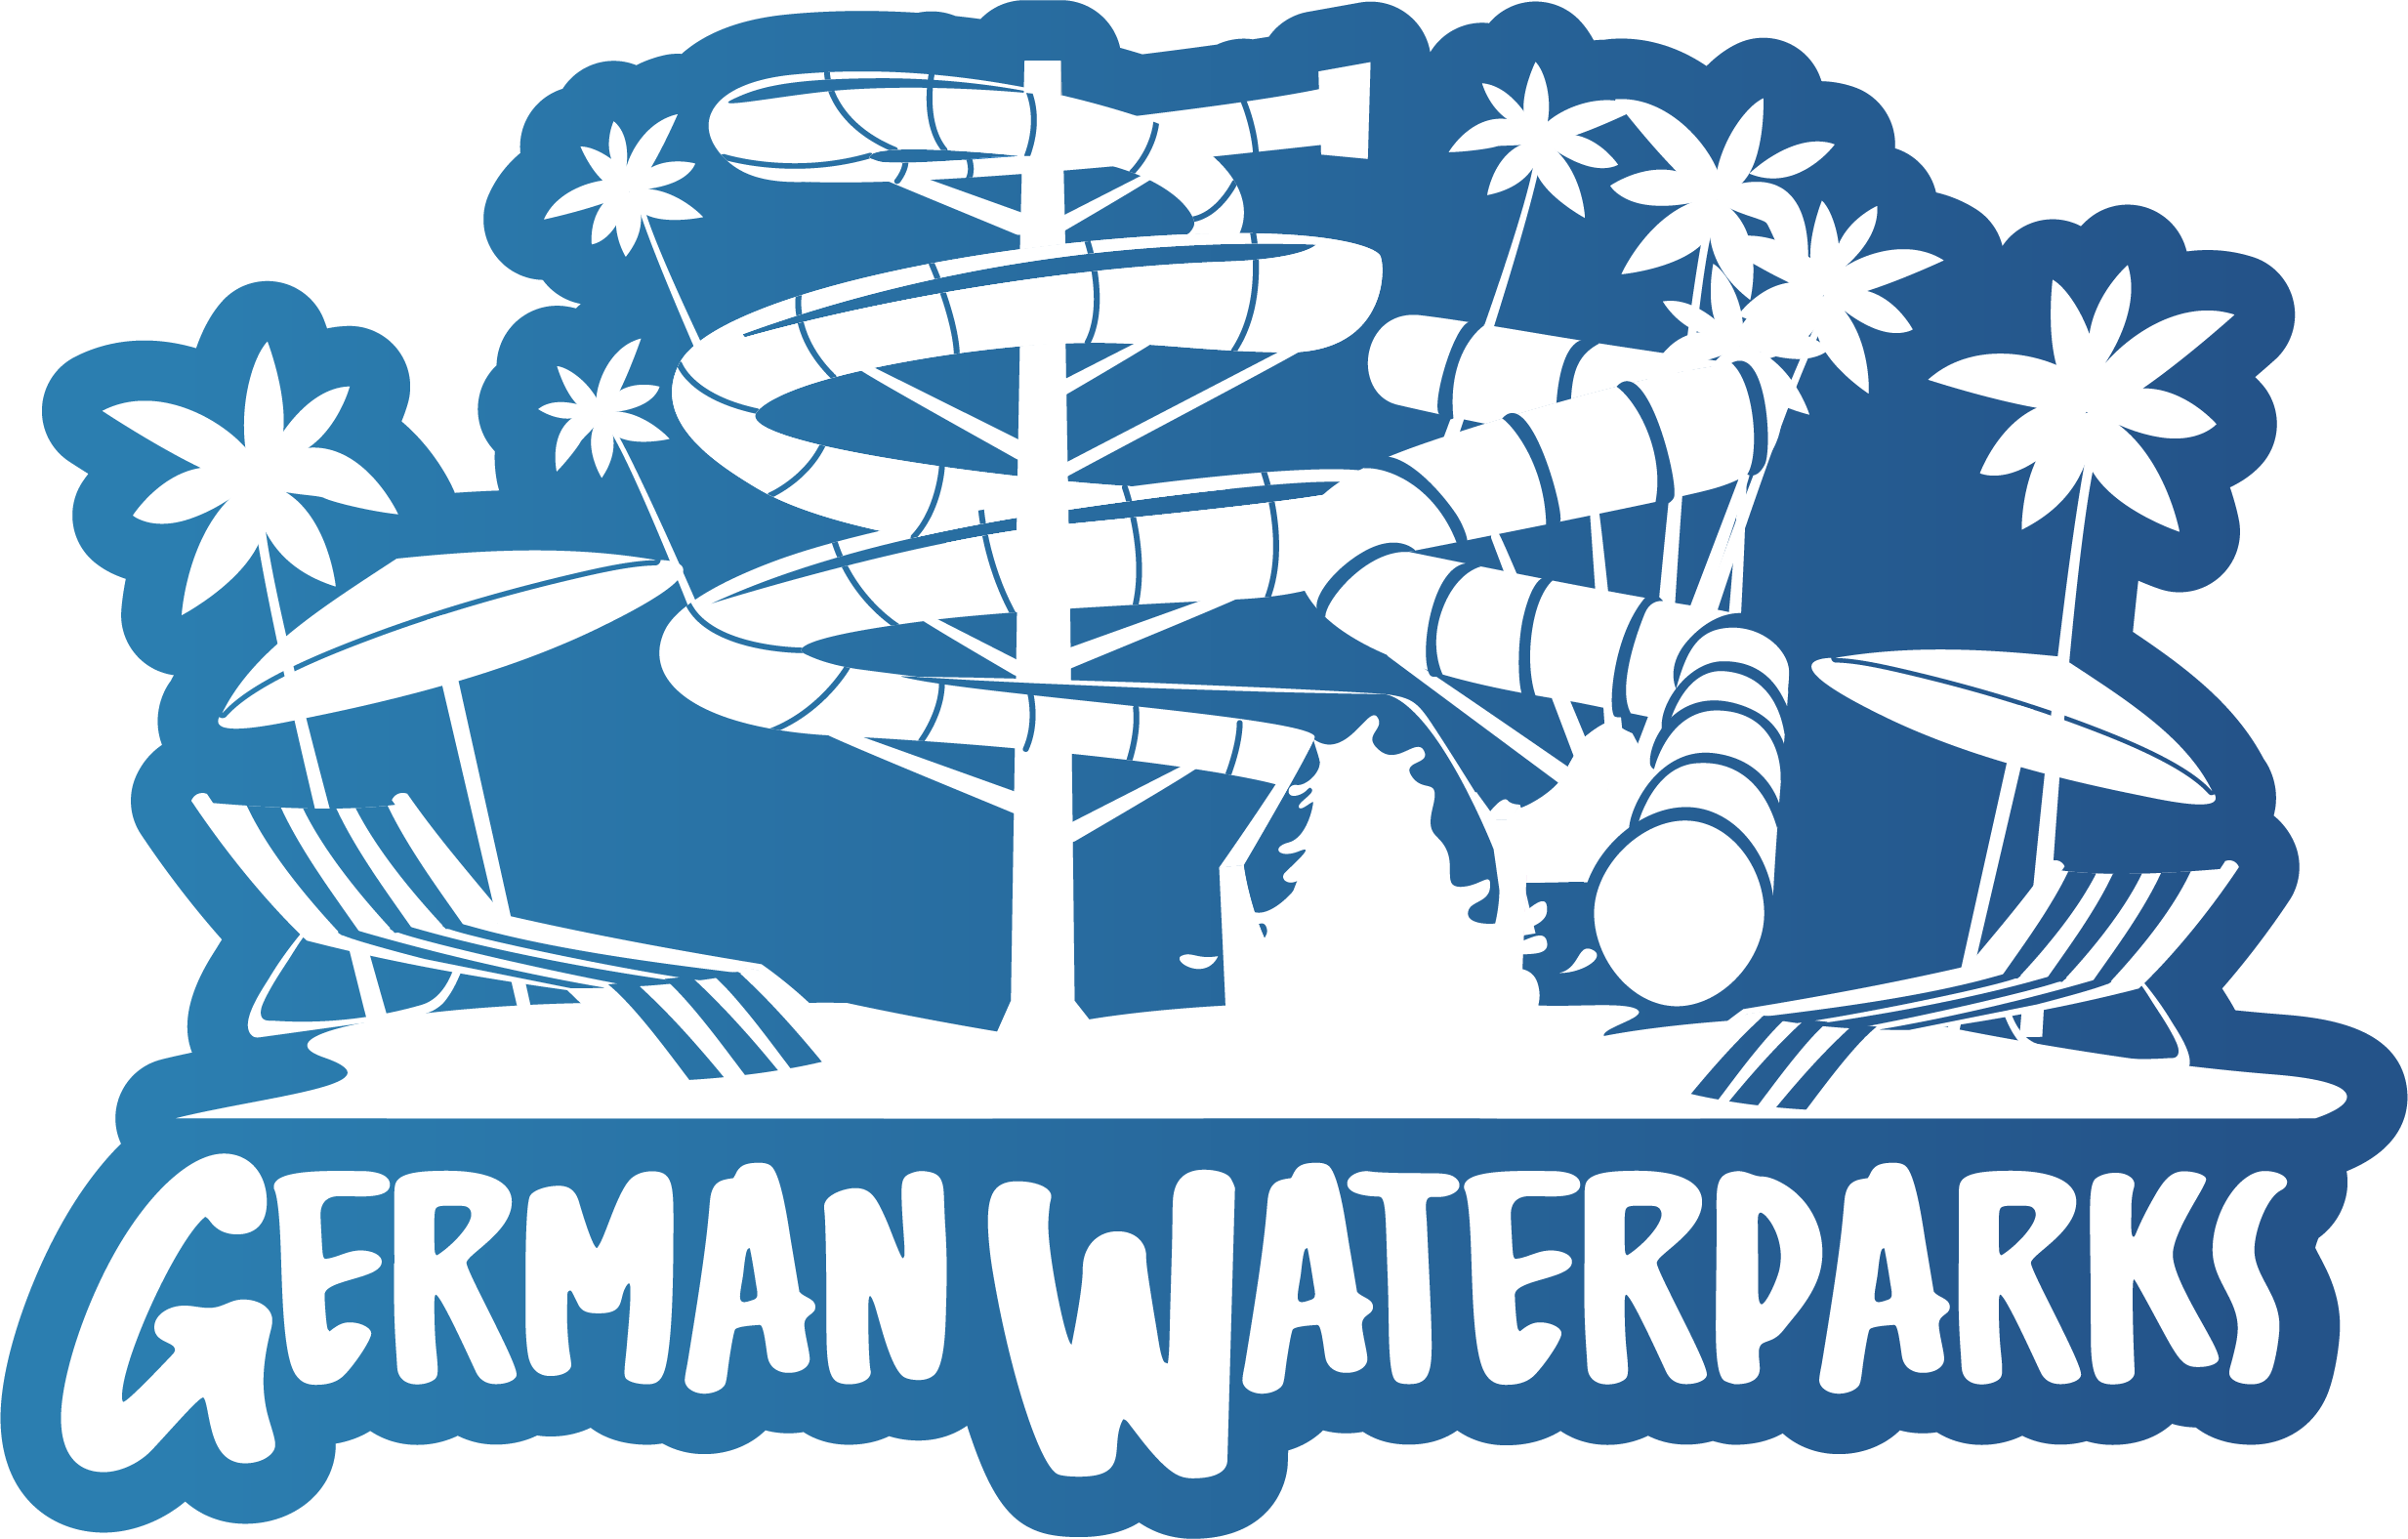 German Waterparks